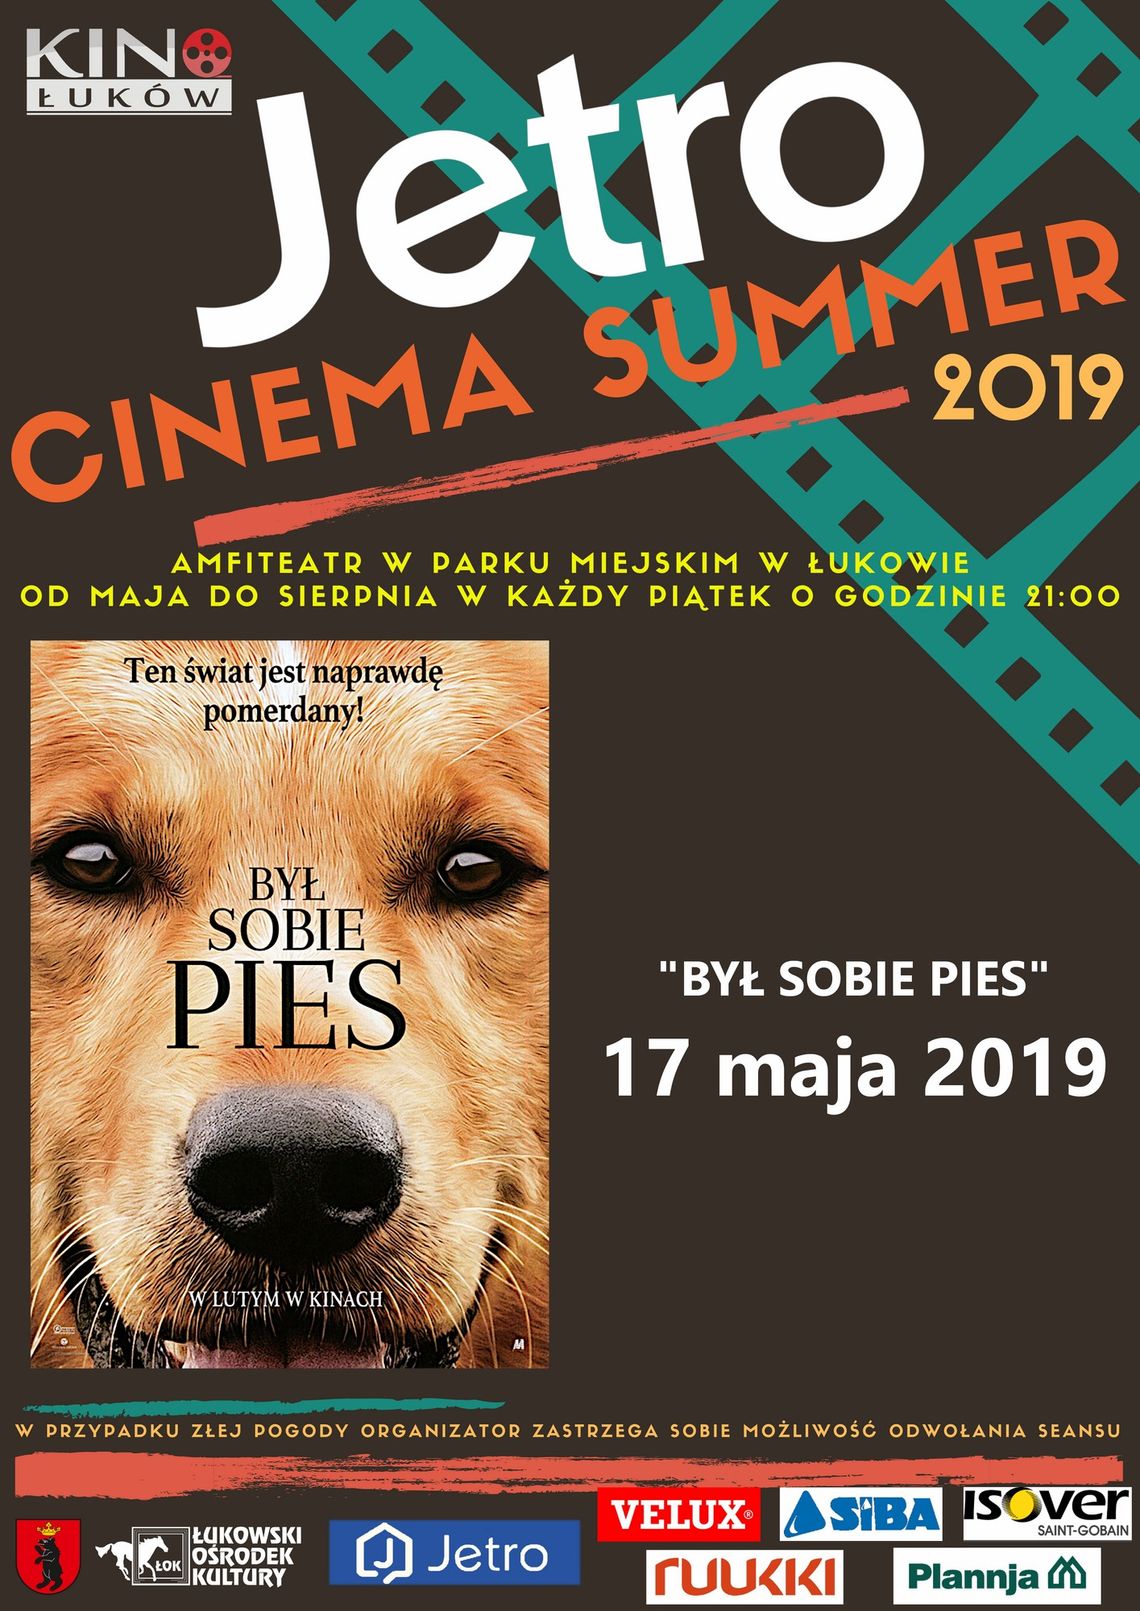 Jetro Cinema Summer 2019 "Był sobie pies" /17 maja 2019